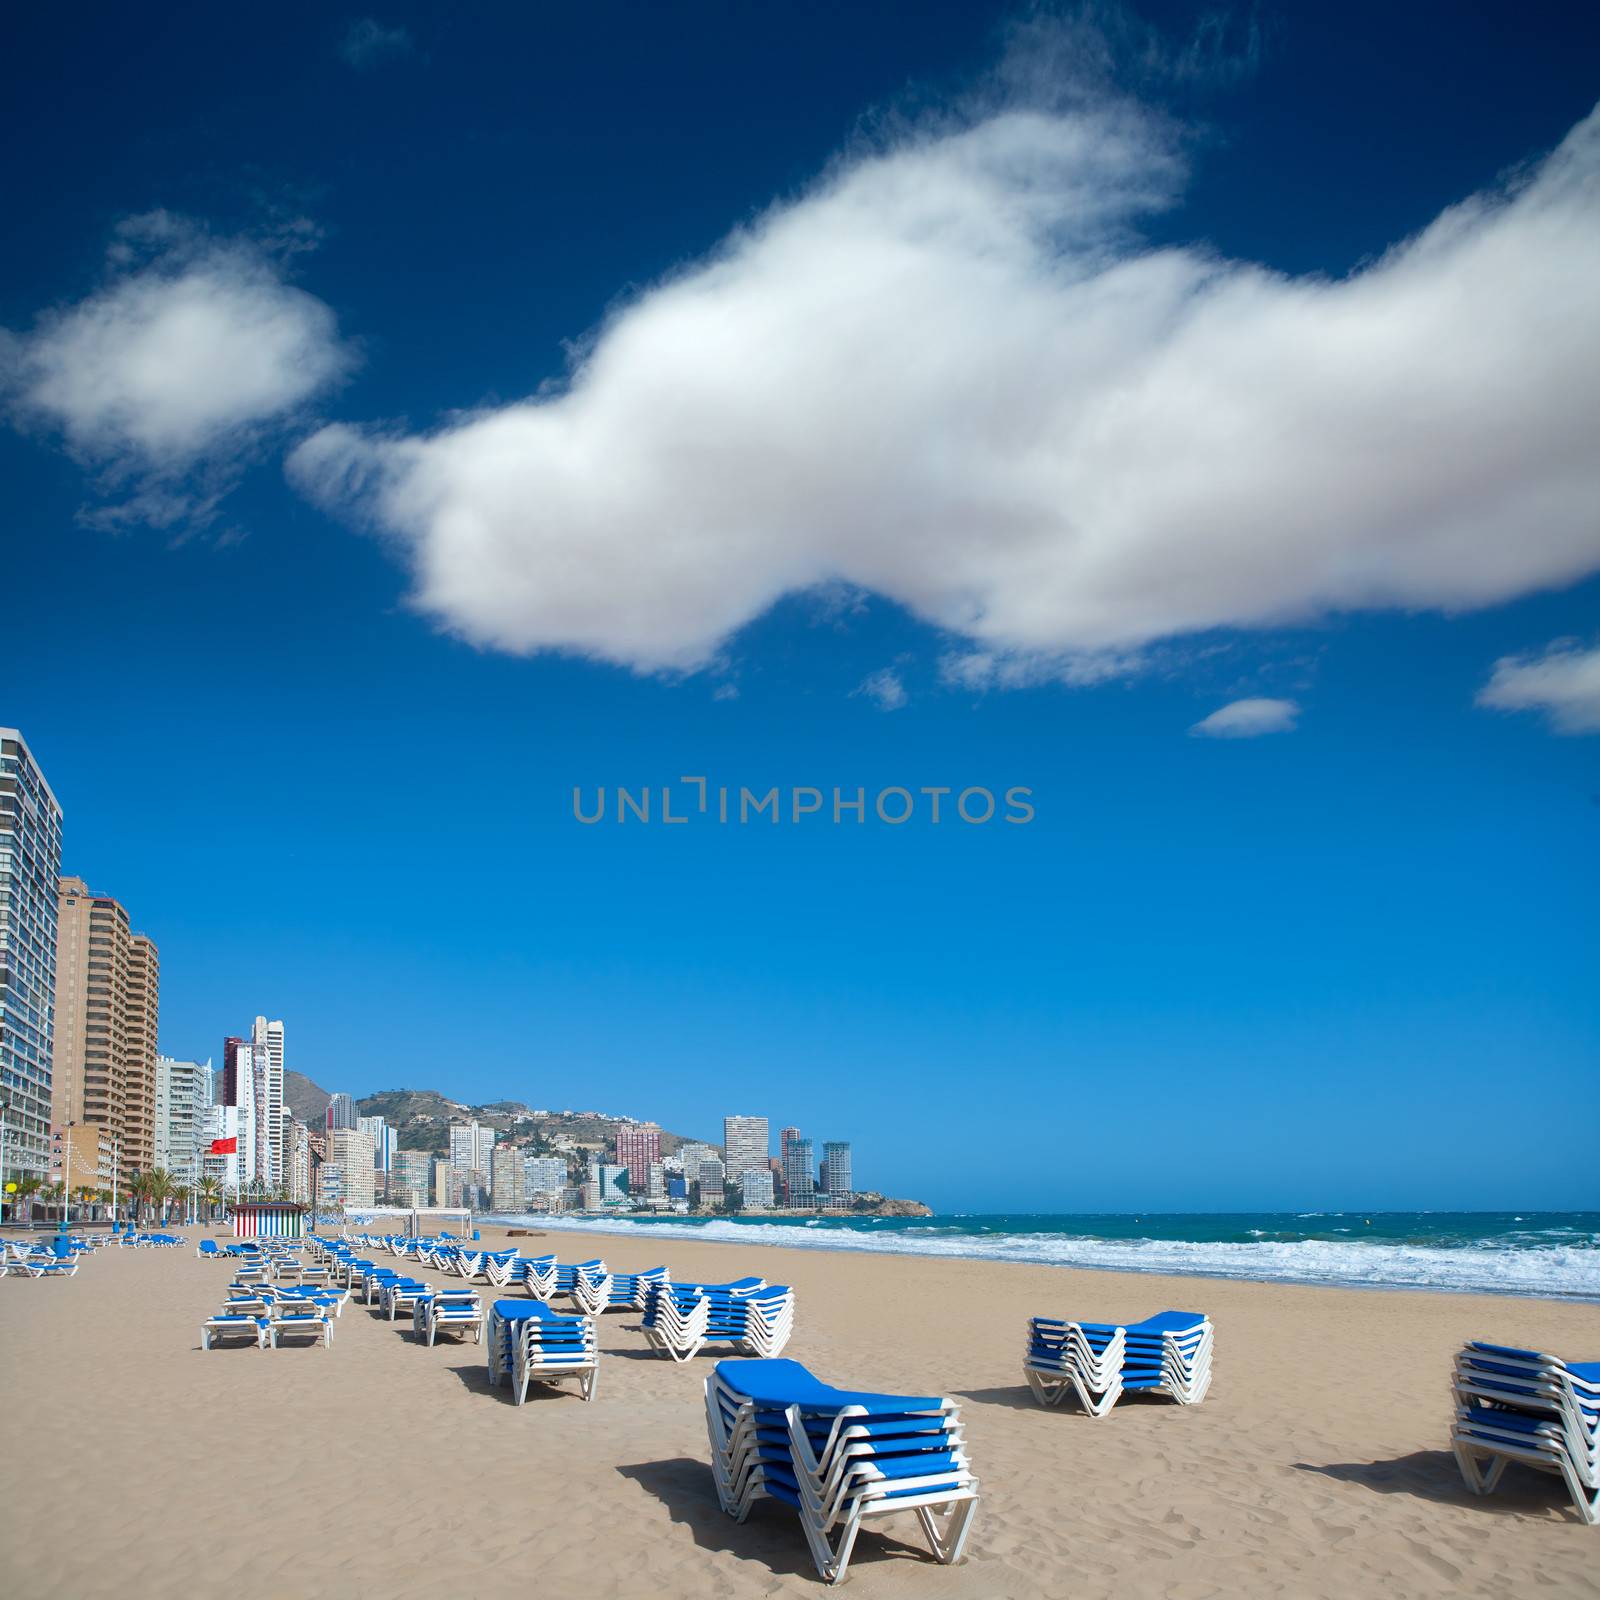 Benidorm Alicante beach buildings and Mediterranean sea of Spain